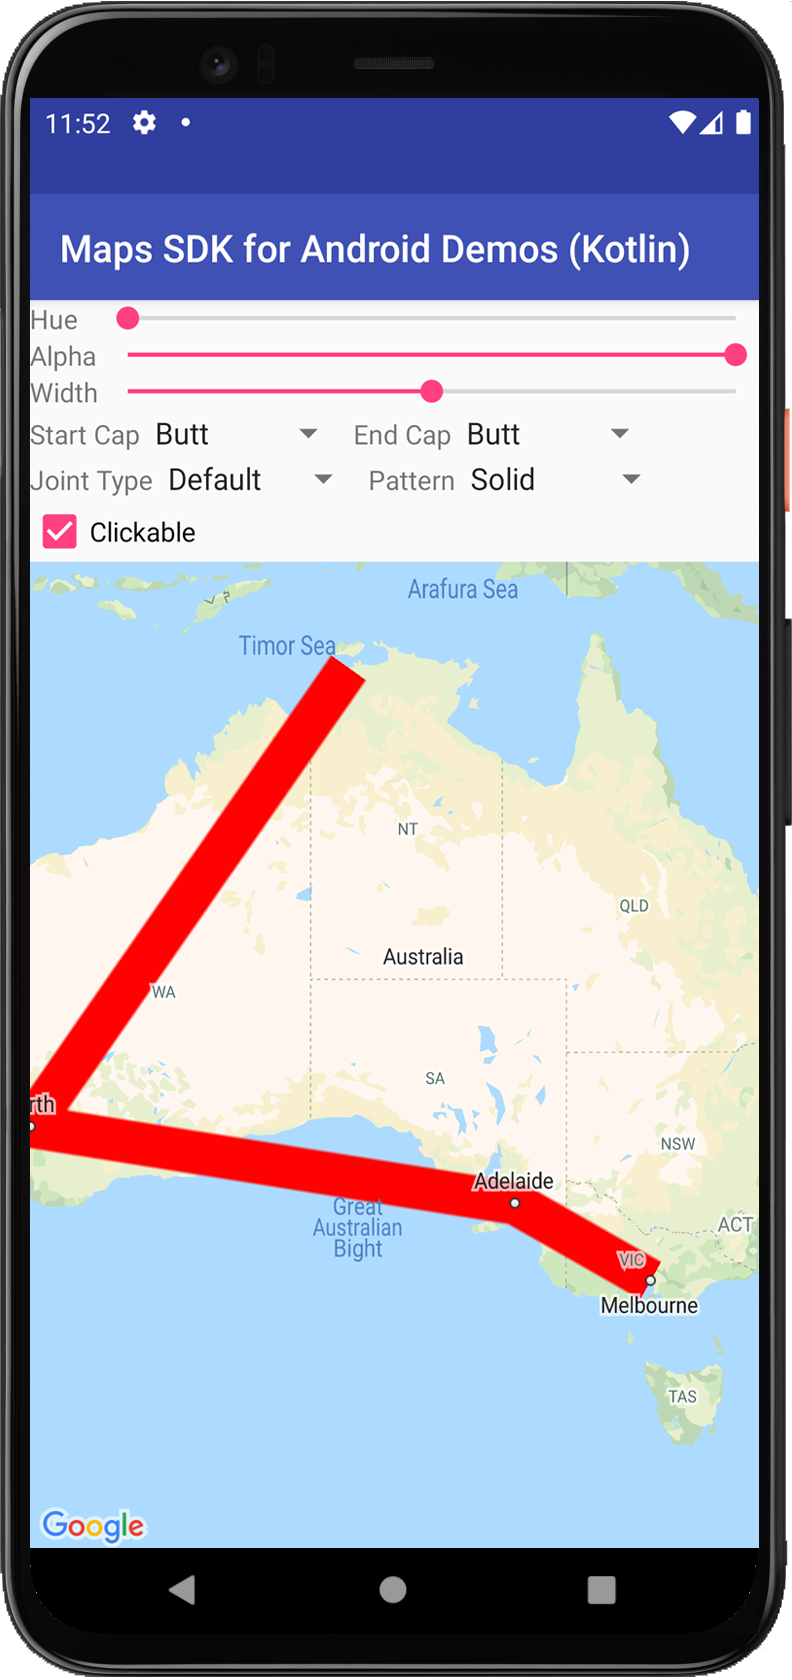 Bản đồ có hình nhiều đường màu đỏ đồng nhất